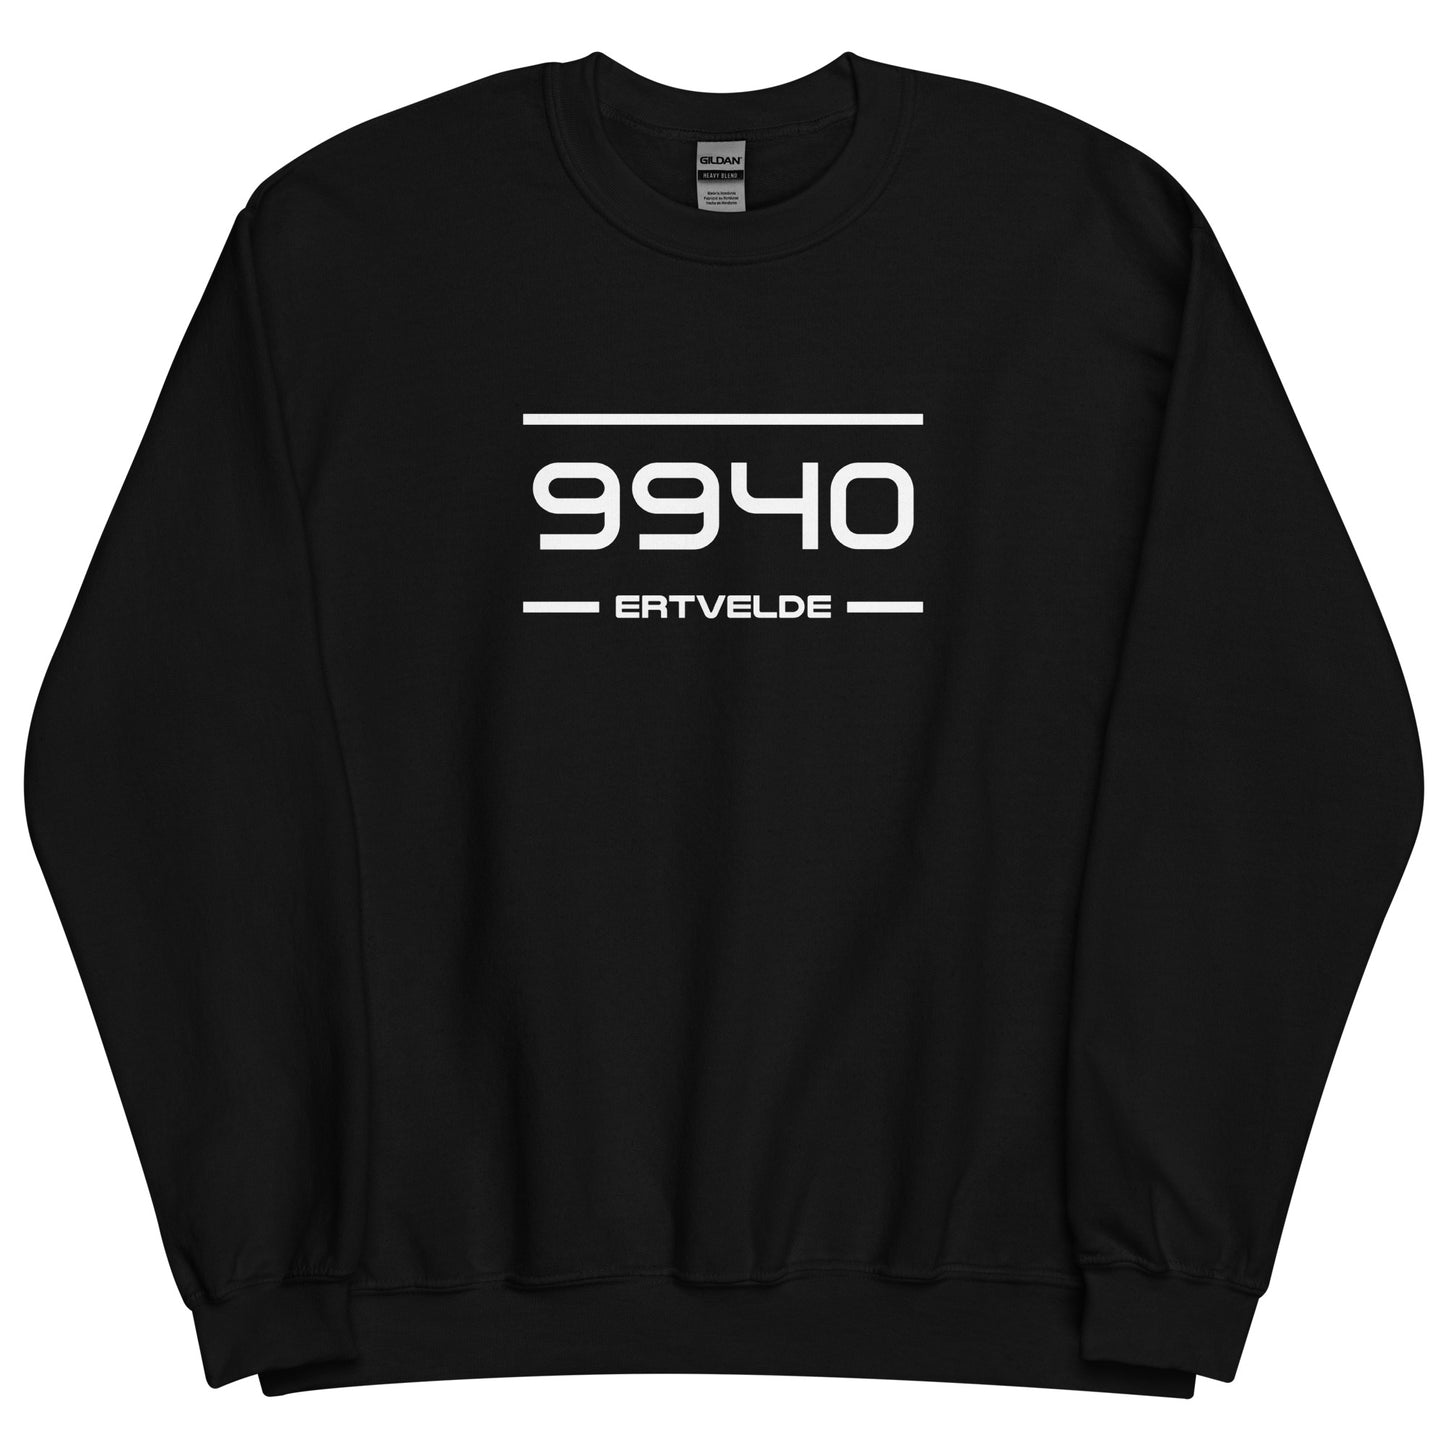 Sweater - 9940 - Ertvelde (M/V)